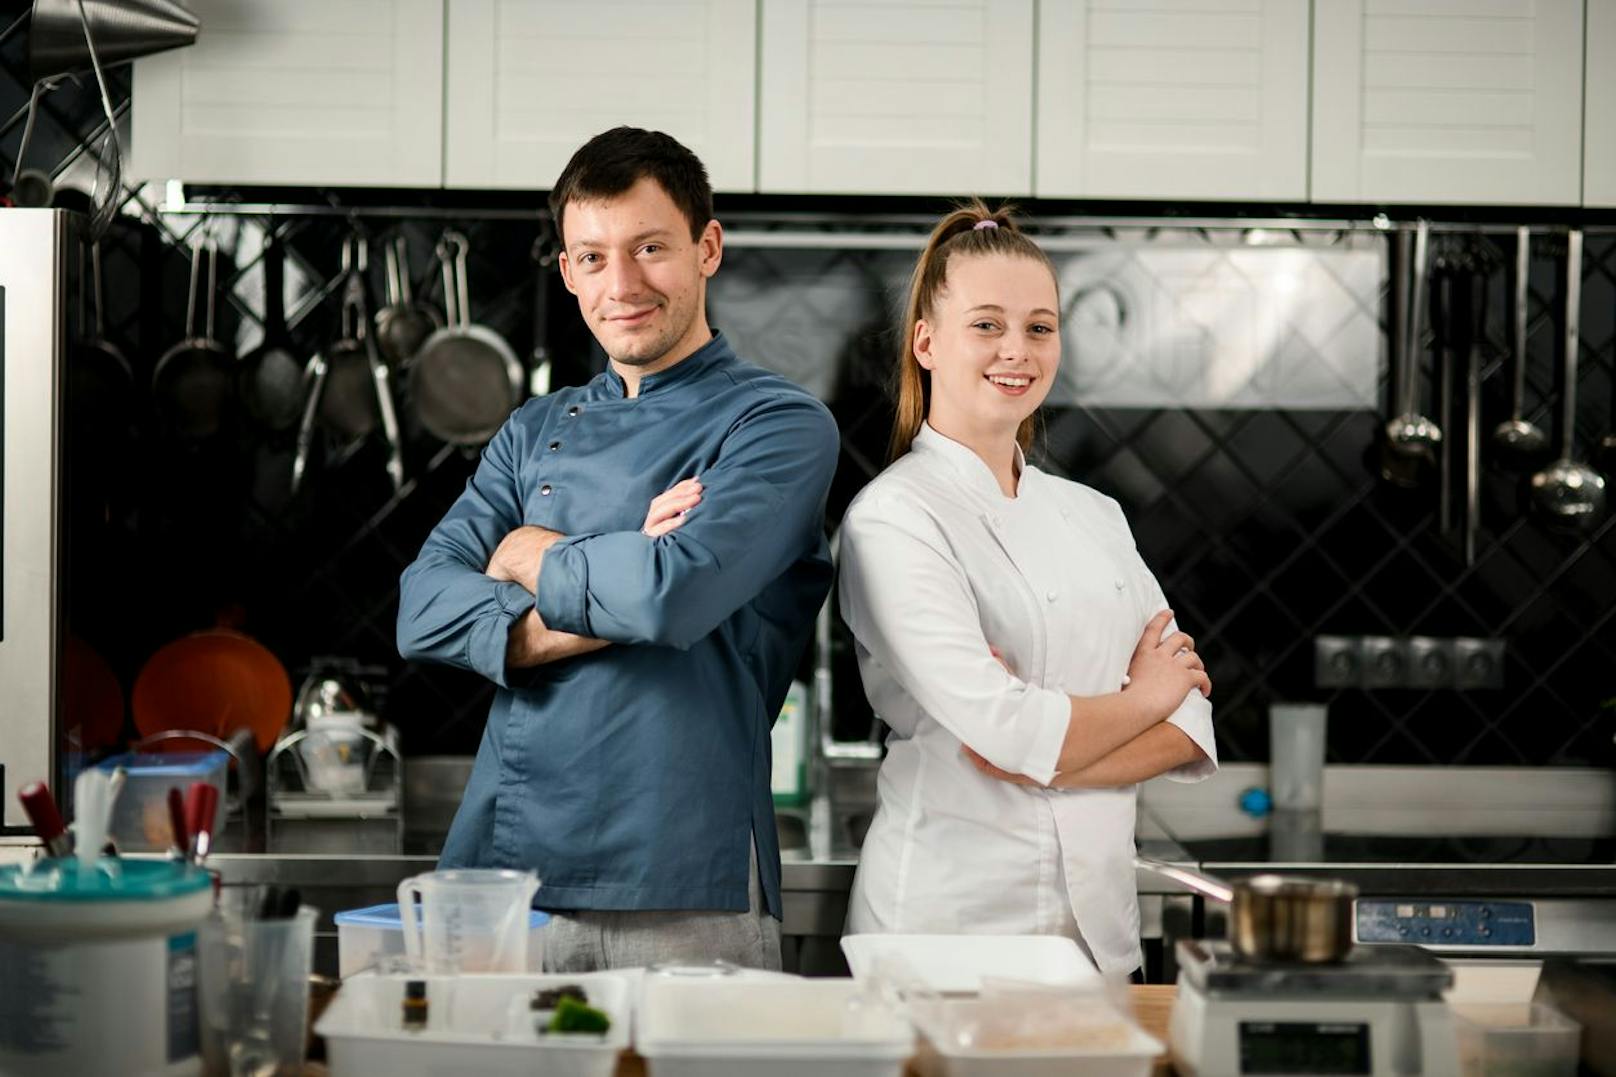 Der Fachkräftemangel in der Gastronomie ist eklatant und mit dieser neuen Ausbildung will man wieder Jugendliche für den Kochberuf gewinnen.